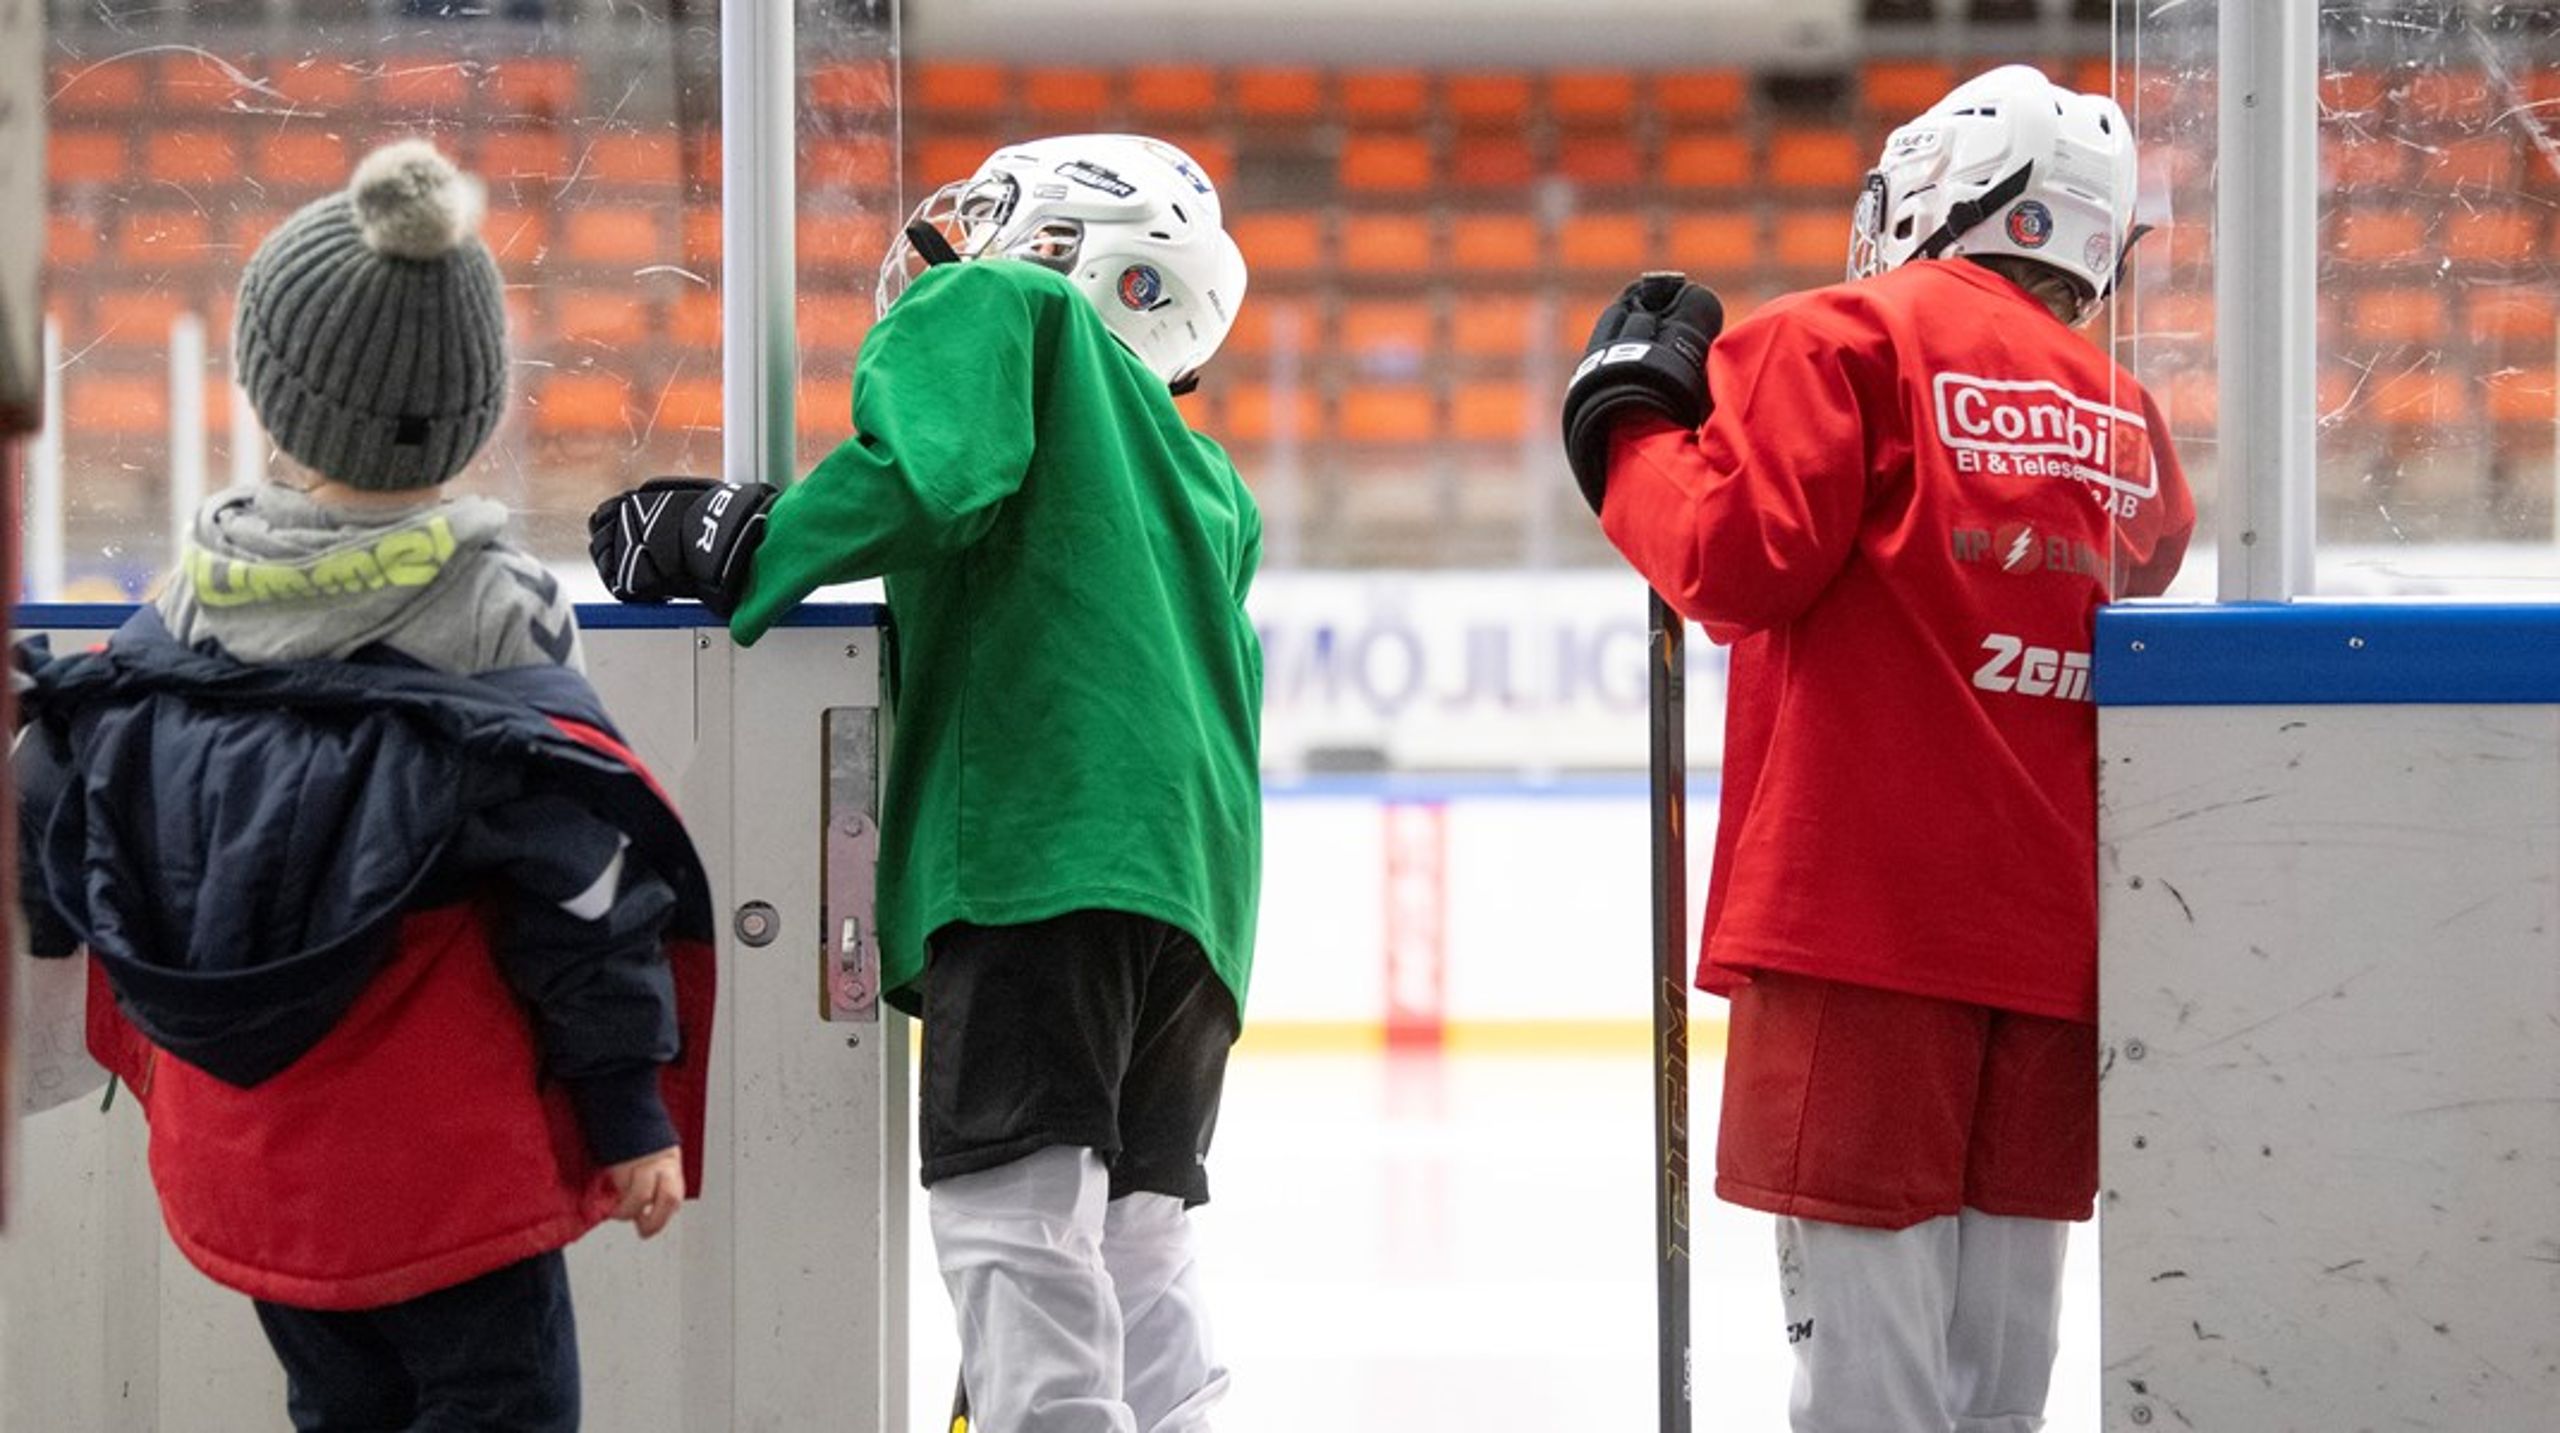 ”I vuxen ålder åker jag mer än gärna på ishockeymatcher och det är en fröjd att få ta del av mina barns fritidsaktiviteter och begynnande deltagande i föreningslivet. För det är faktiskt där som många svenskar formas till demokratiska medborgare.”